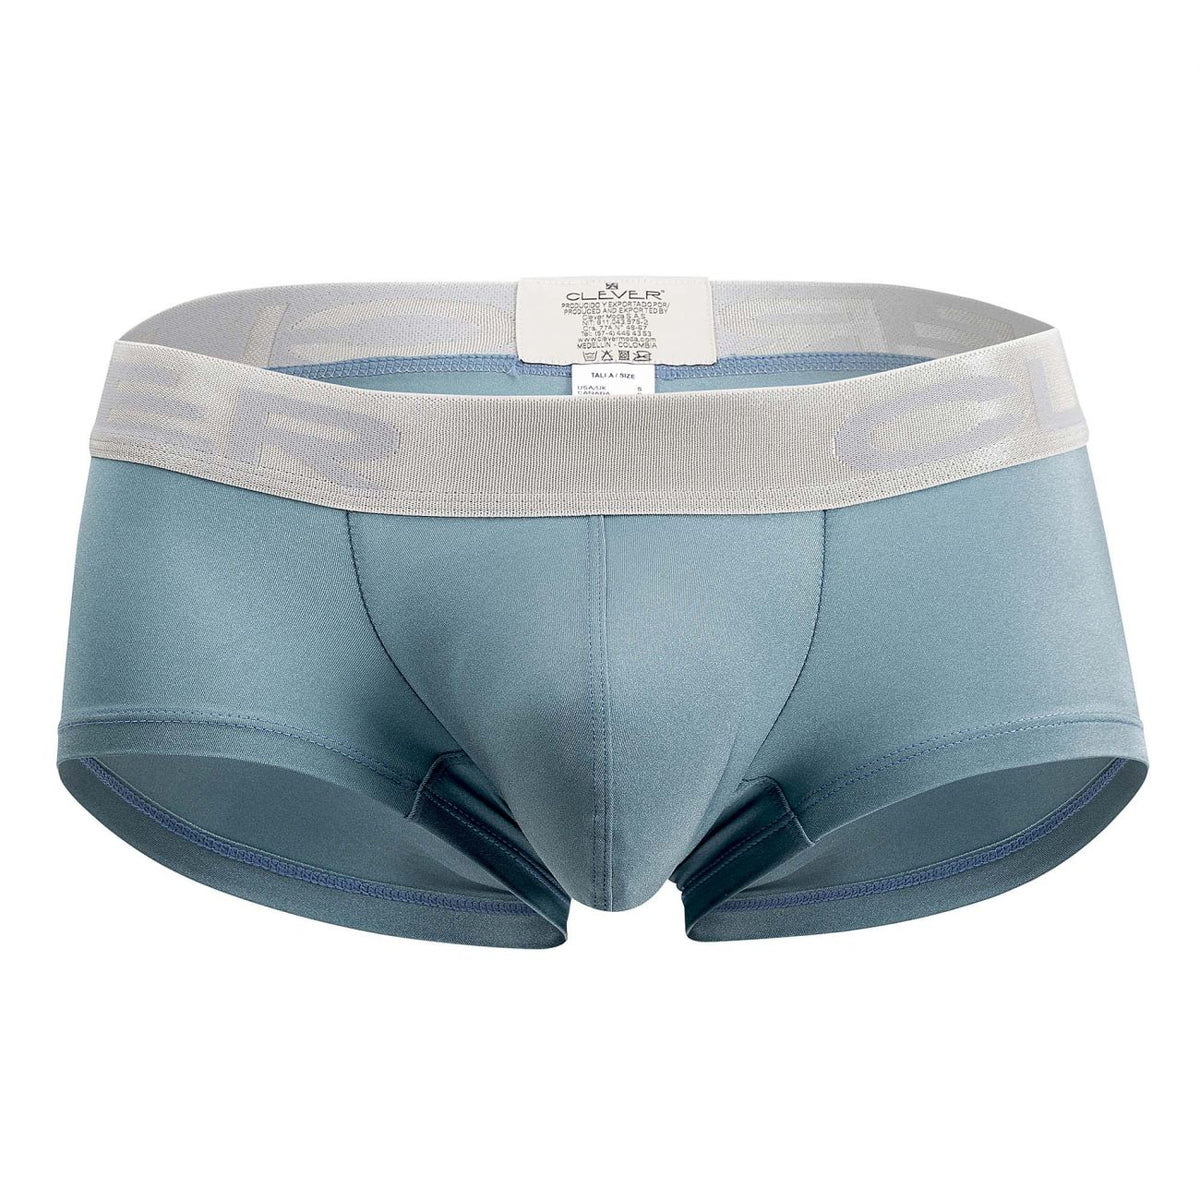 Clever Underwear Phenomenon Latin Trunks | Shop MensUnderwear.io